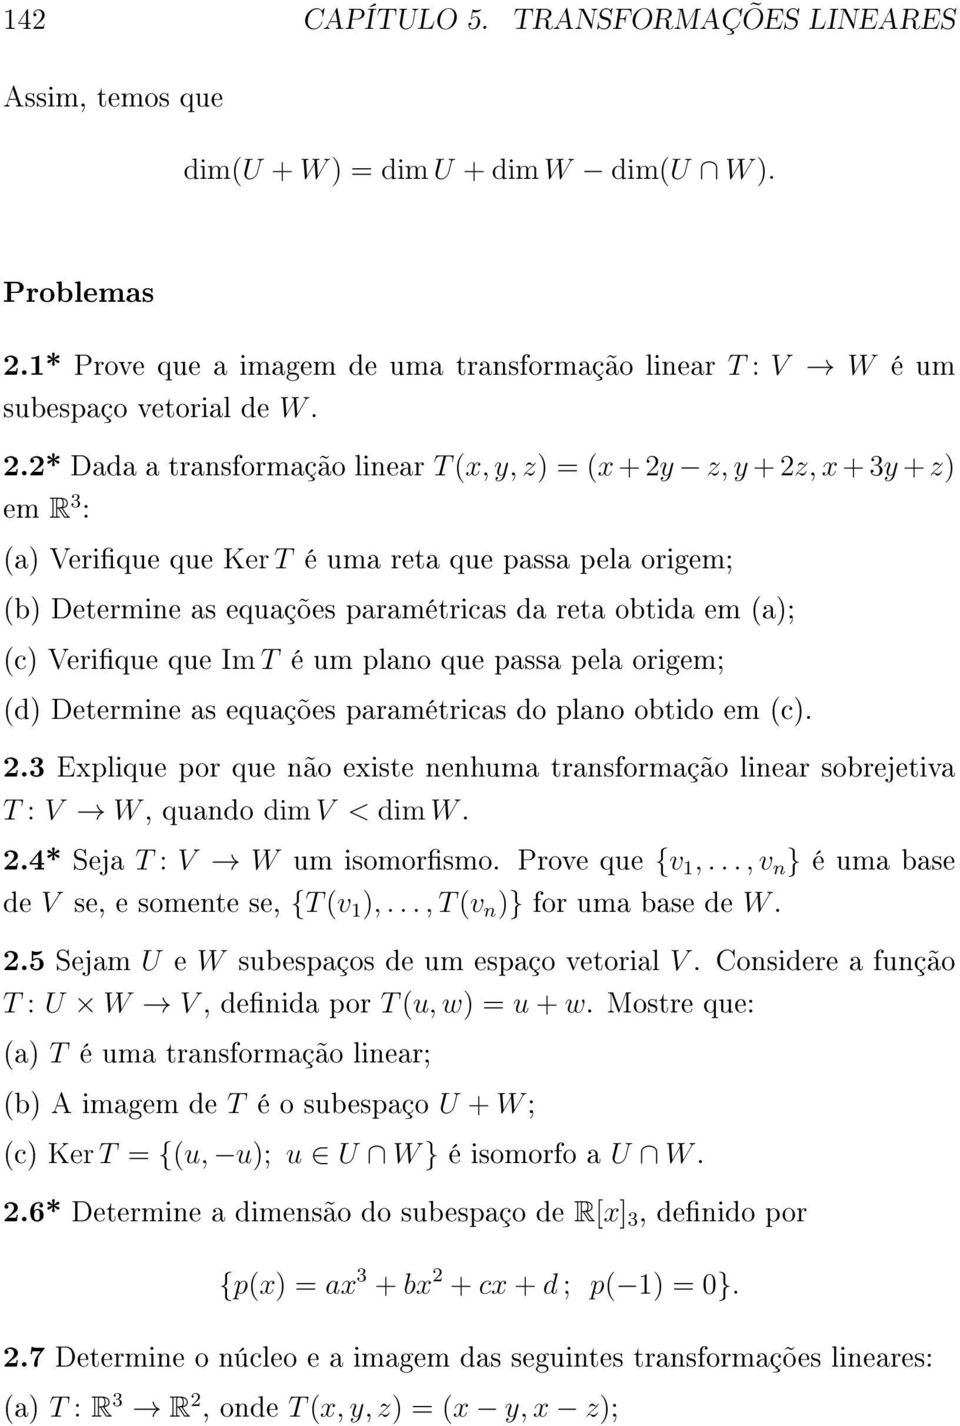 2* Dada a transformação linear T (x, y, z) = (x + 2y z, y + 2z, x + 3y + z) em R 3 : (a) Verique que Ker T é uma reta que passa pela origem; (b) Determine as equações paramétricas da reta obtida em